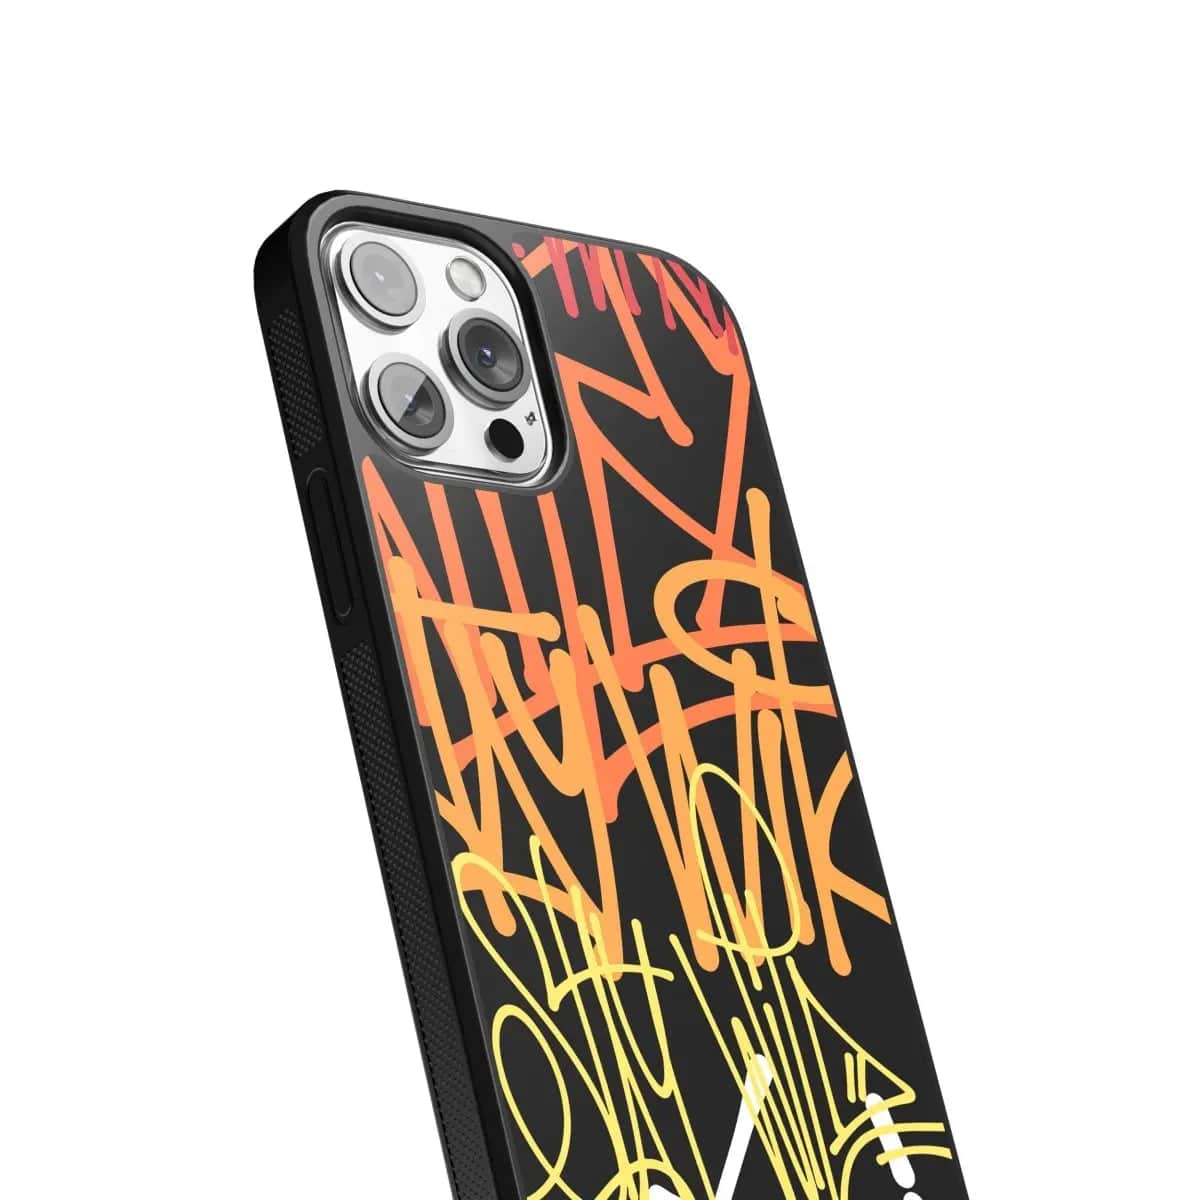 Phone case "Multicolour graffiti 3" - Artcase